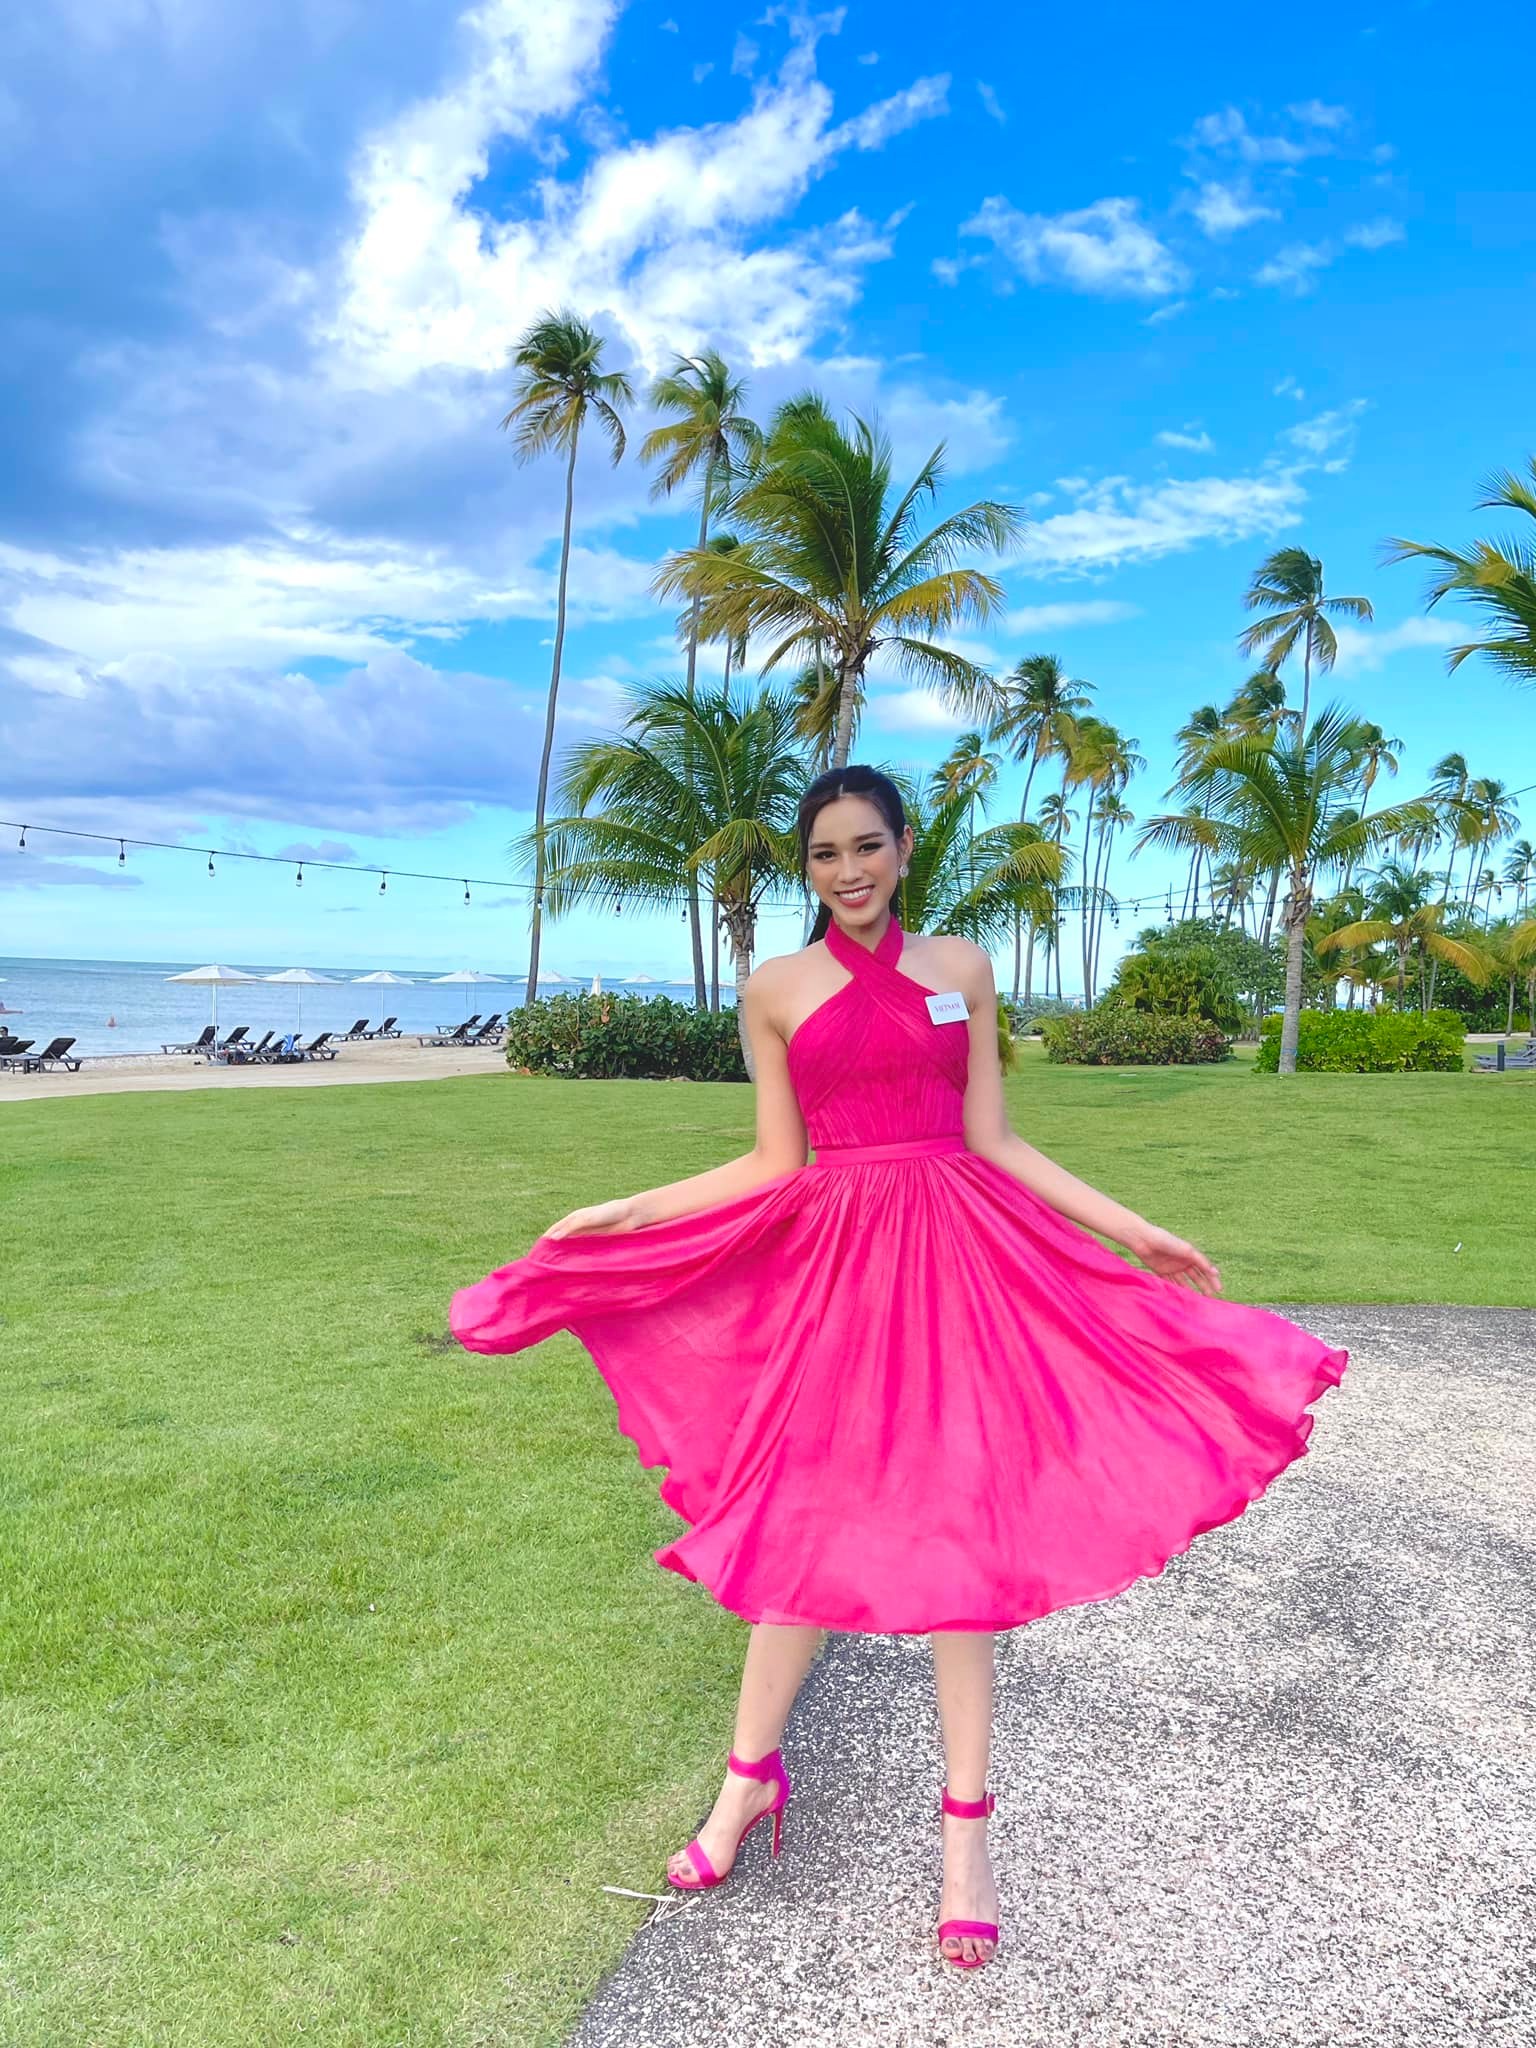 Đỗ Thị Hà duyên dáng với đầm màu hồng neon phối cùng giày cao gót đồng điệu màu sắc. 